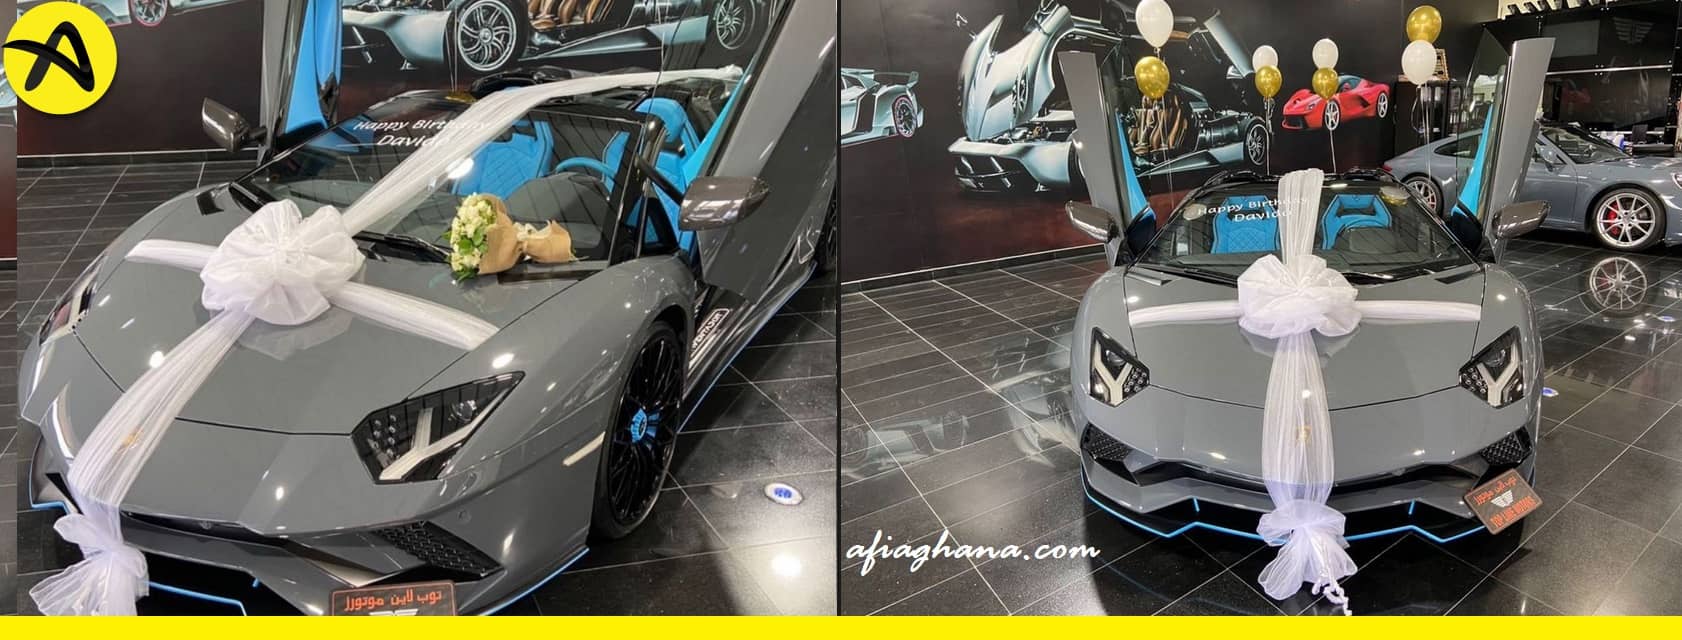 Davido Buys Brand New Lamborghini Aventador worth over $400,000 14